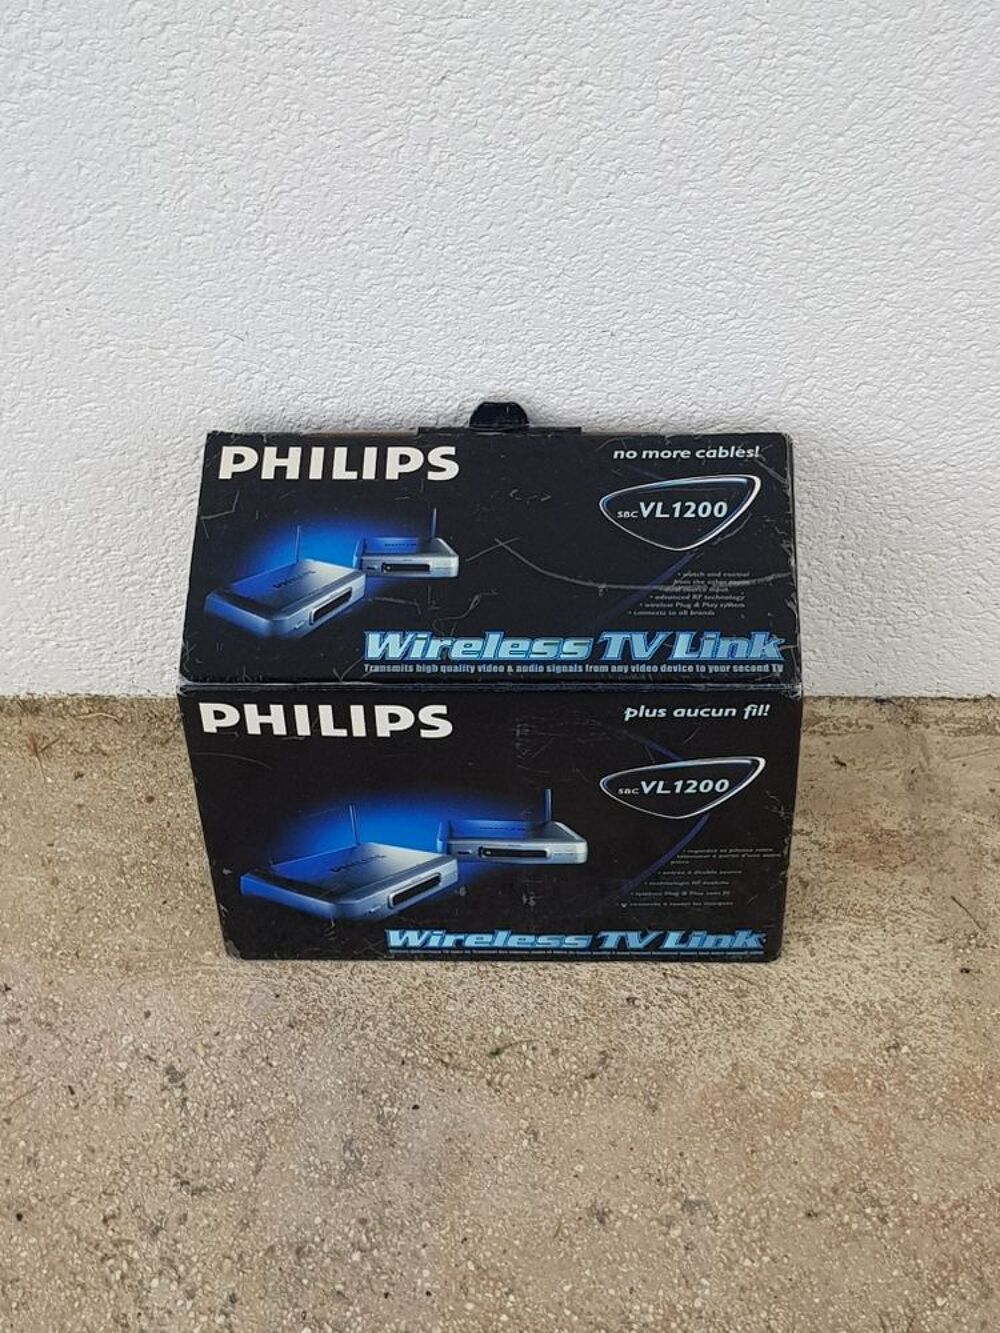 Phillips SBC VL1200 wireless TV link &eacute;metteur r&eacute;cepteur Electromnager